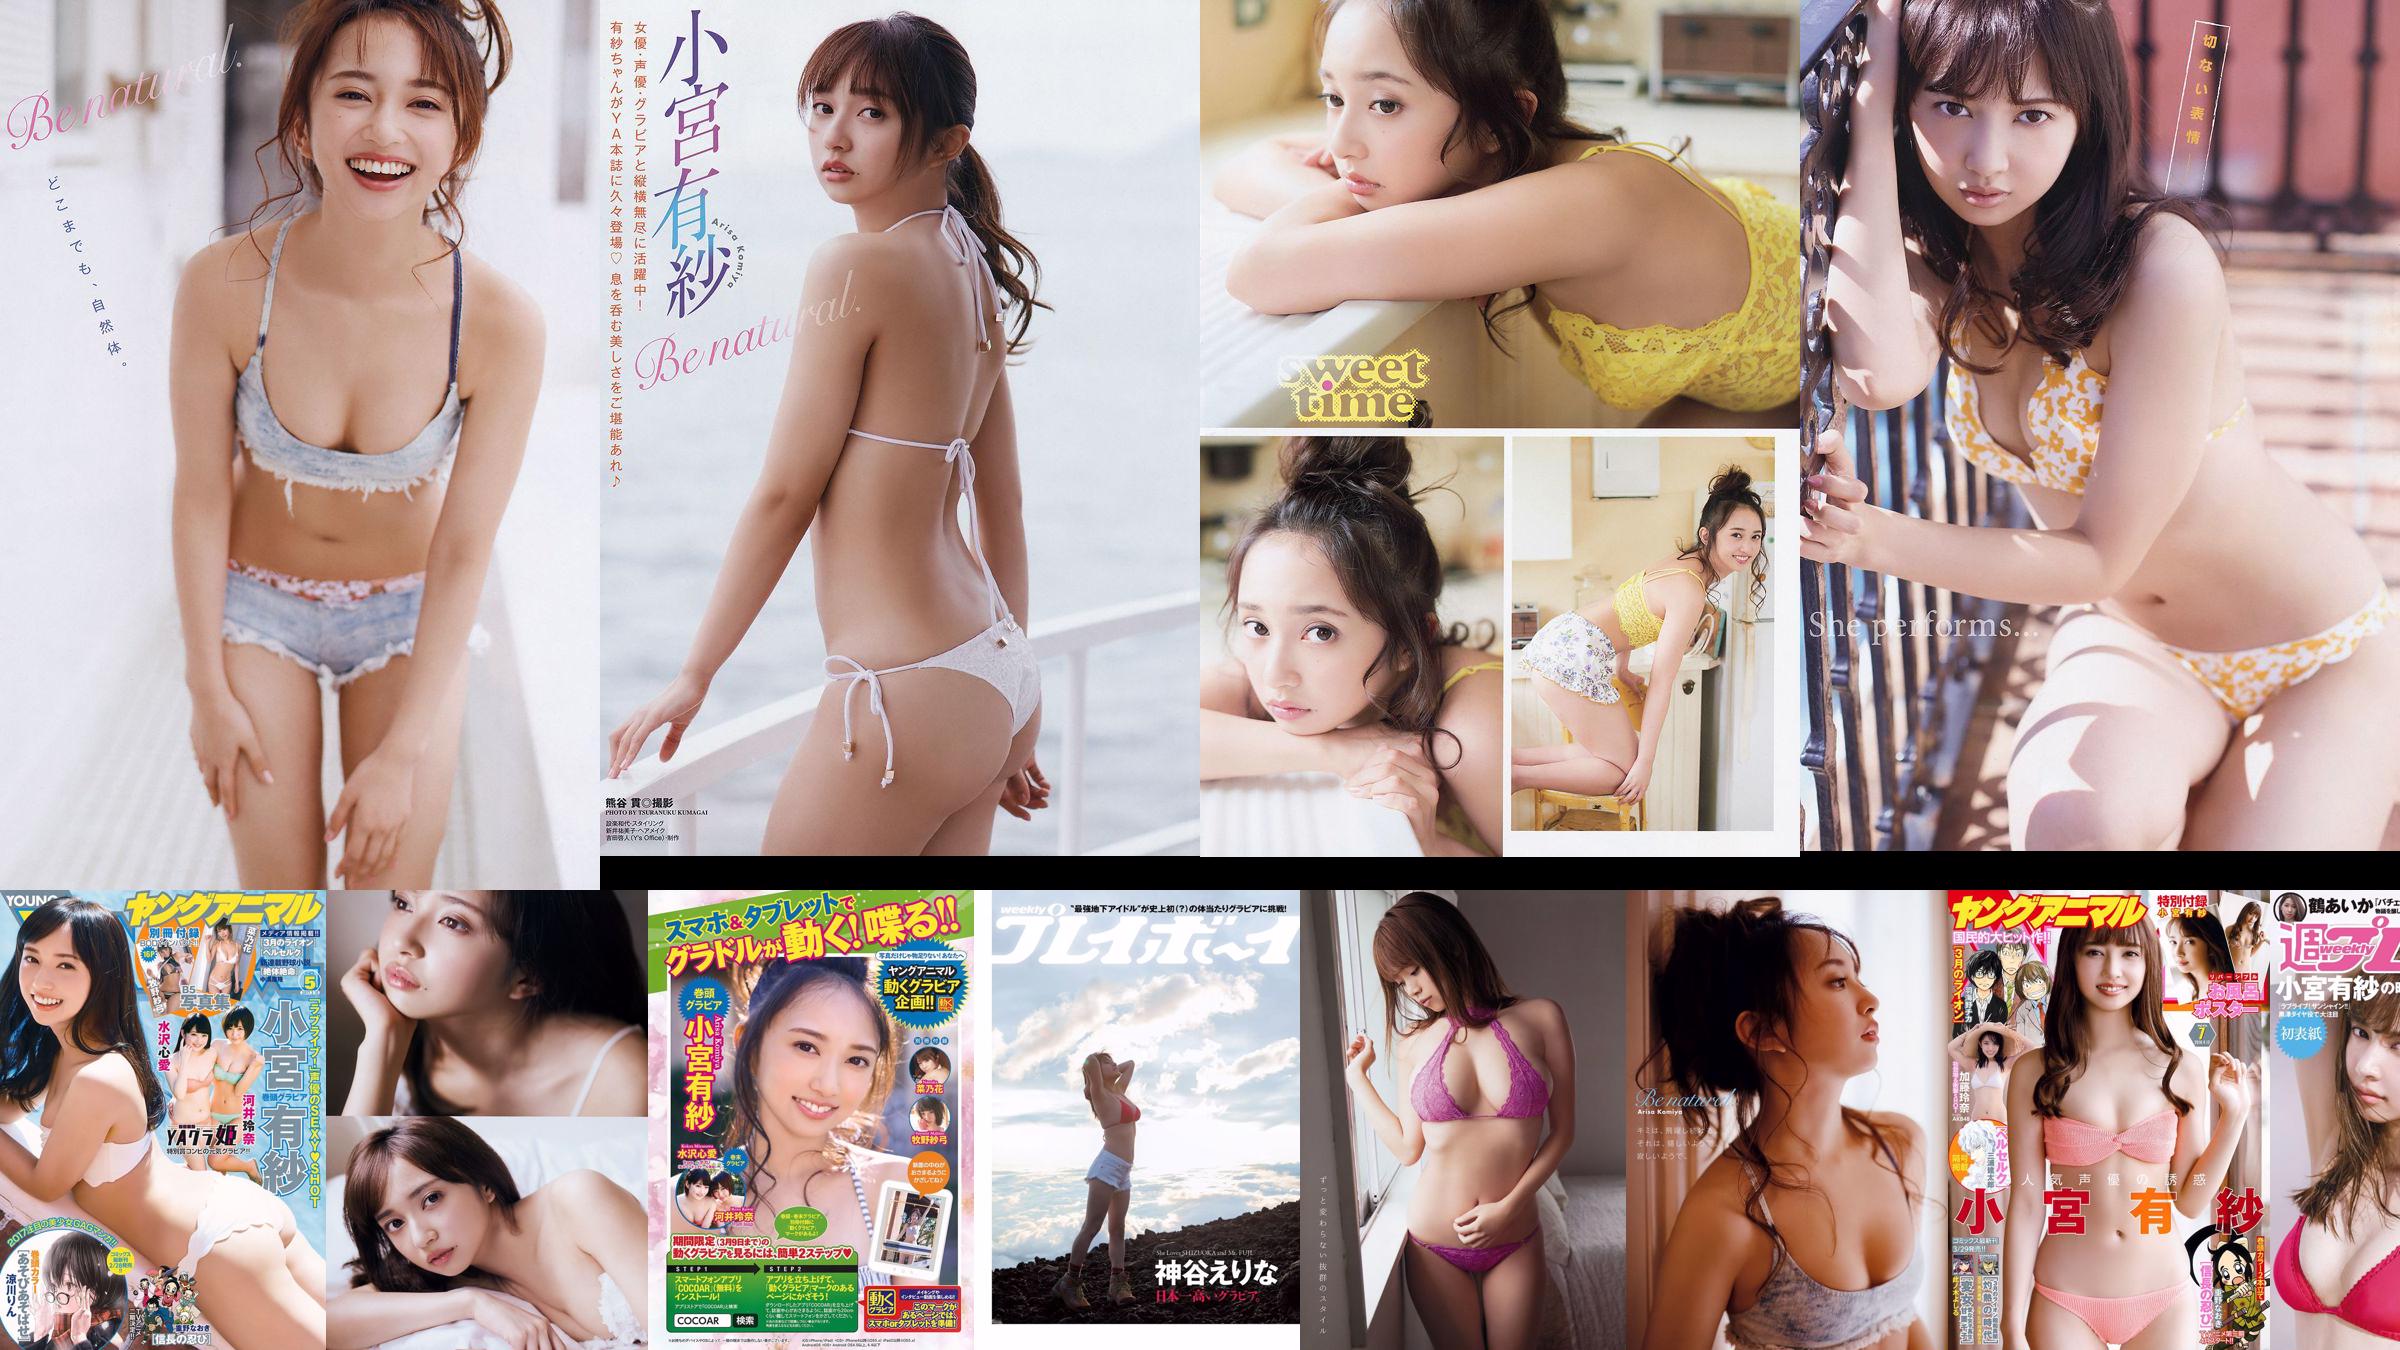 Arisa Komiya Rena Kato [Jungtier] 2018 No.07 Fotomagazin No.44d95a Seite 1